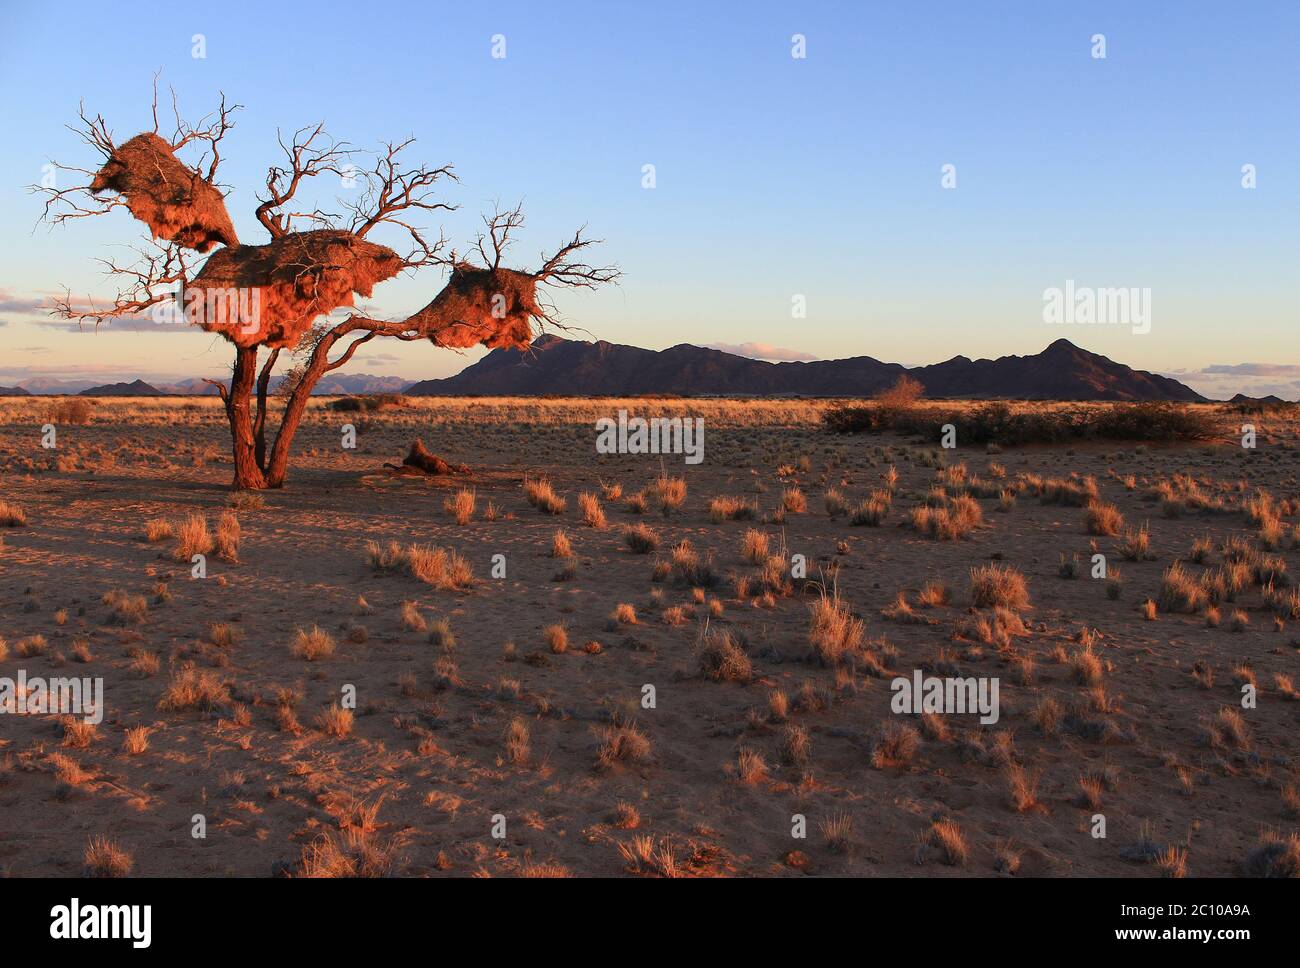 Letzte Sonnenstrahlen auf Sesriem in der Namib Wüste (Namibia). Unglaubliche Gemeinschaftsnester, die von geselligen Webern (Philetairus socius) gebaut wurden, hängen von einem trockenen Baum. Stockfoto